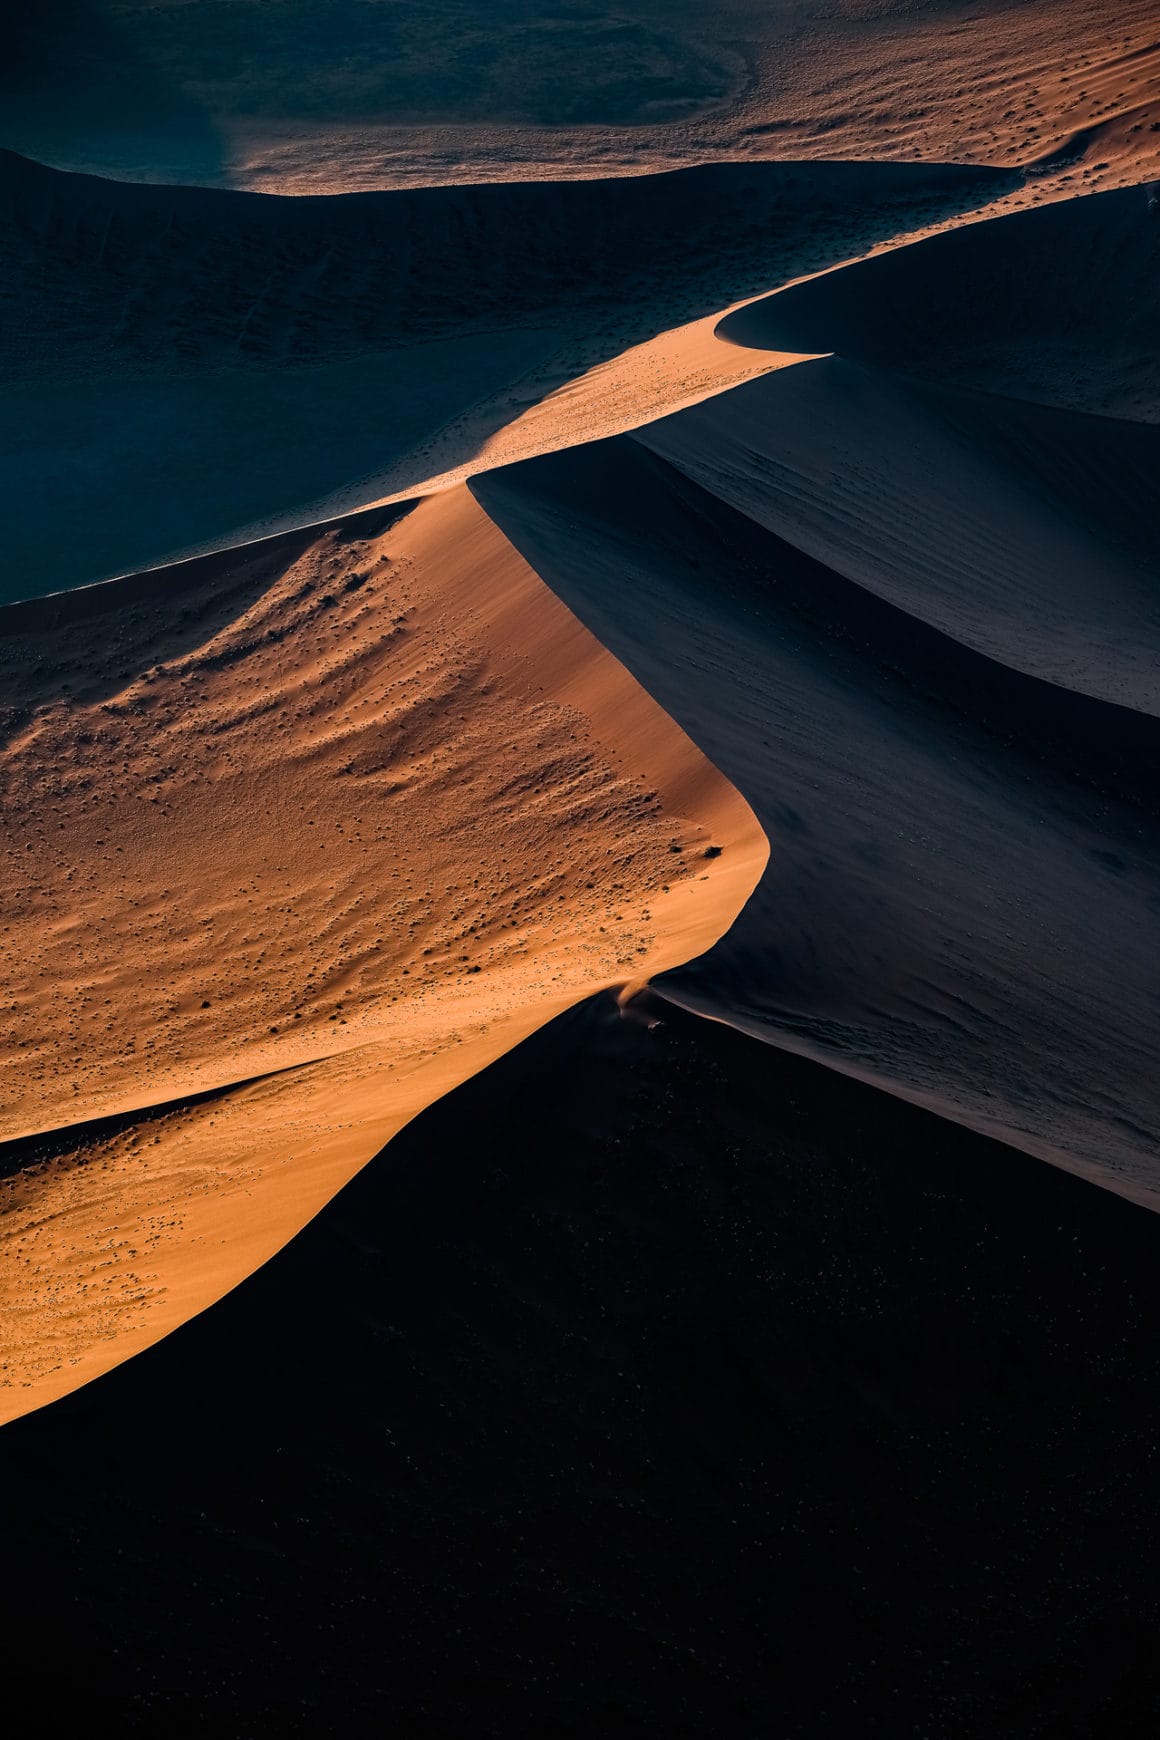 Dunes de sable de Namibierefletant une ligne éclairée par le soleil couchant et noircie par l'ombre de la nuit